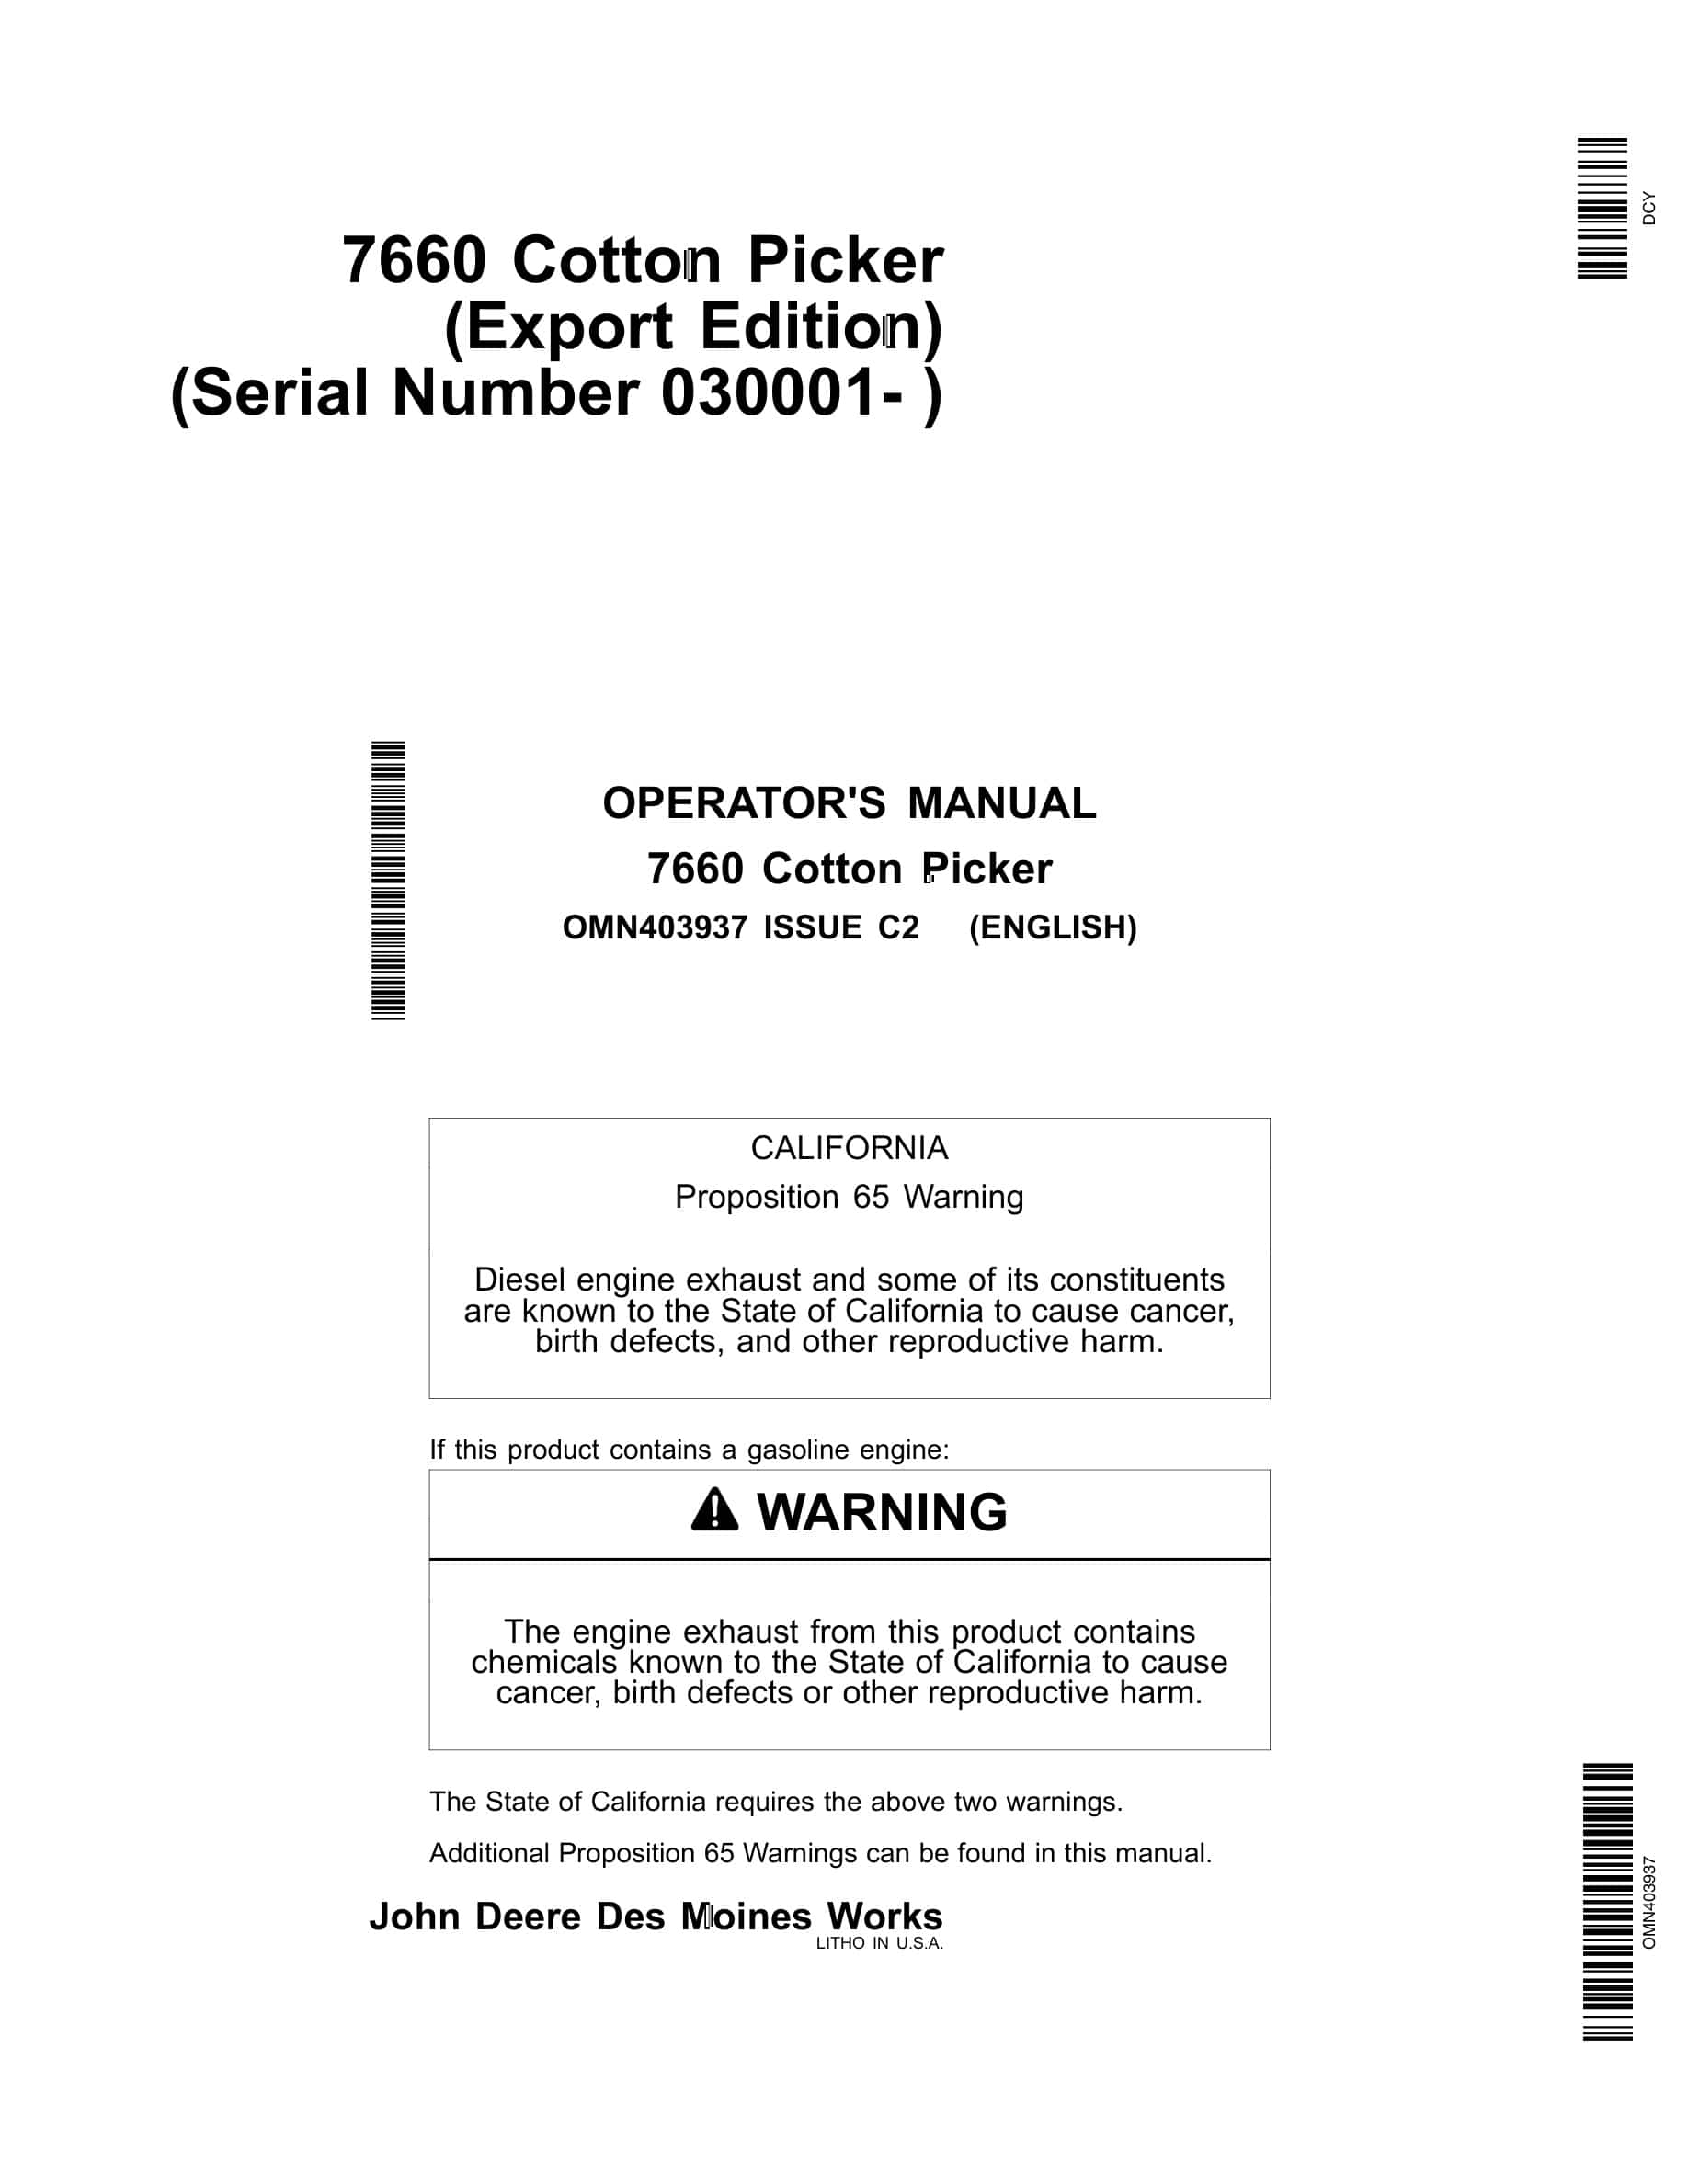 John Deere 7660 Cotton Picker Operator Manual OMN403937-1